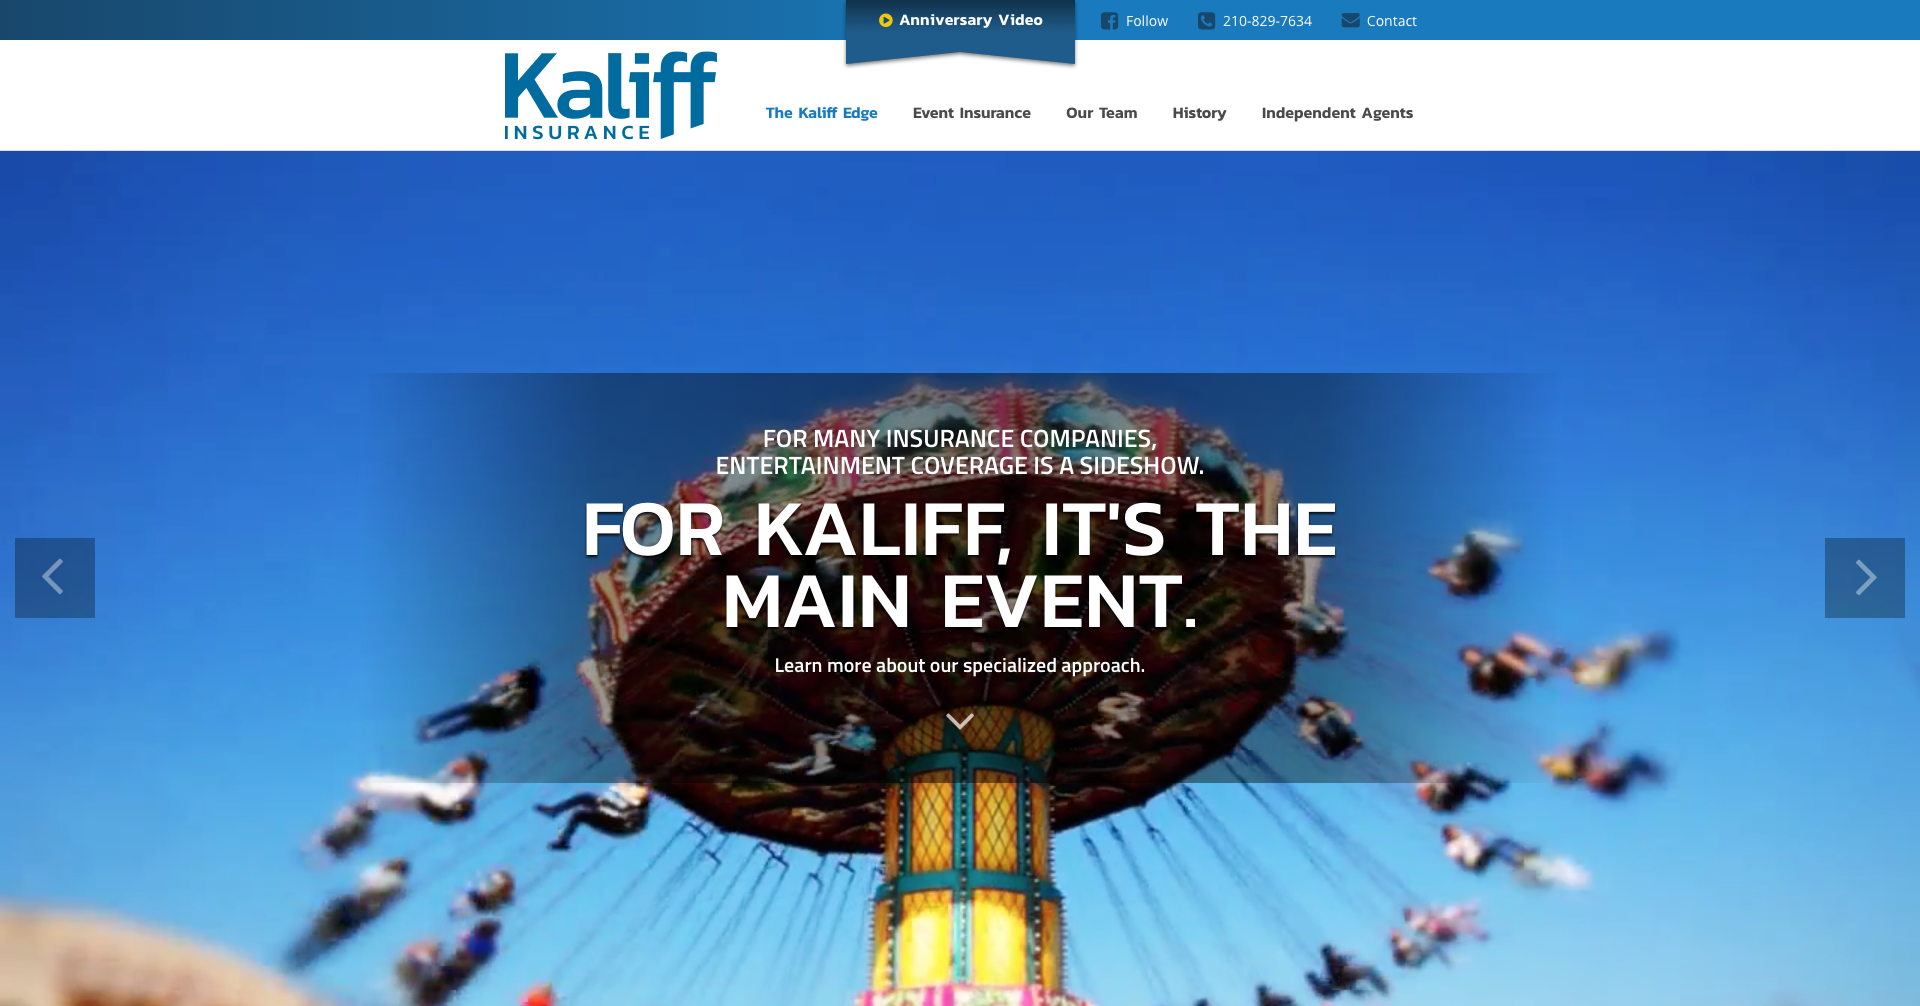 (c) Kaliff.com